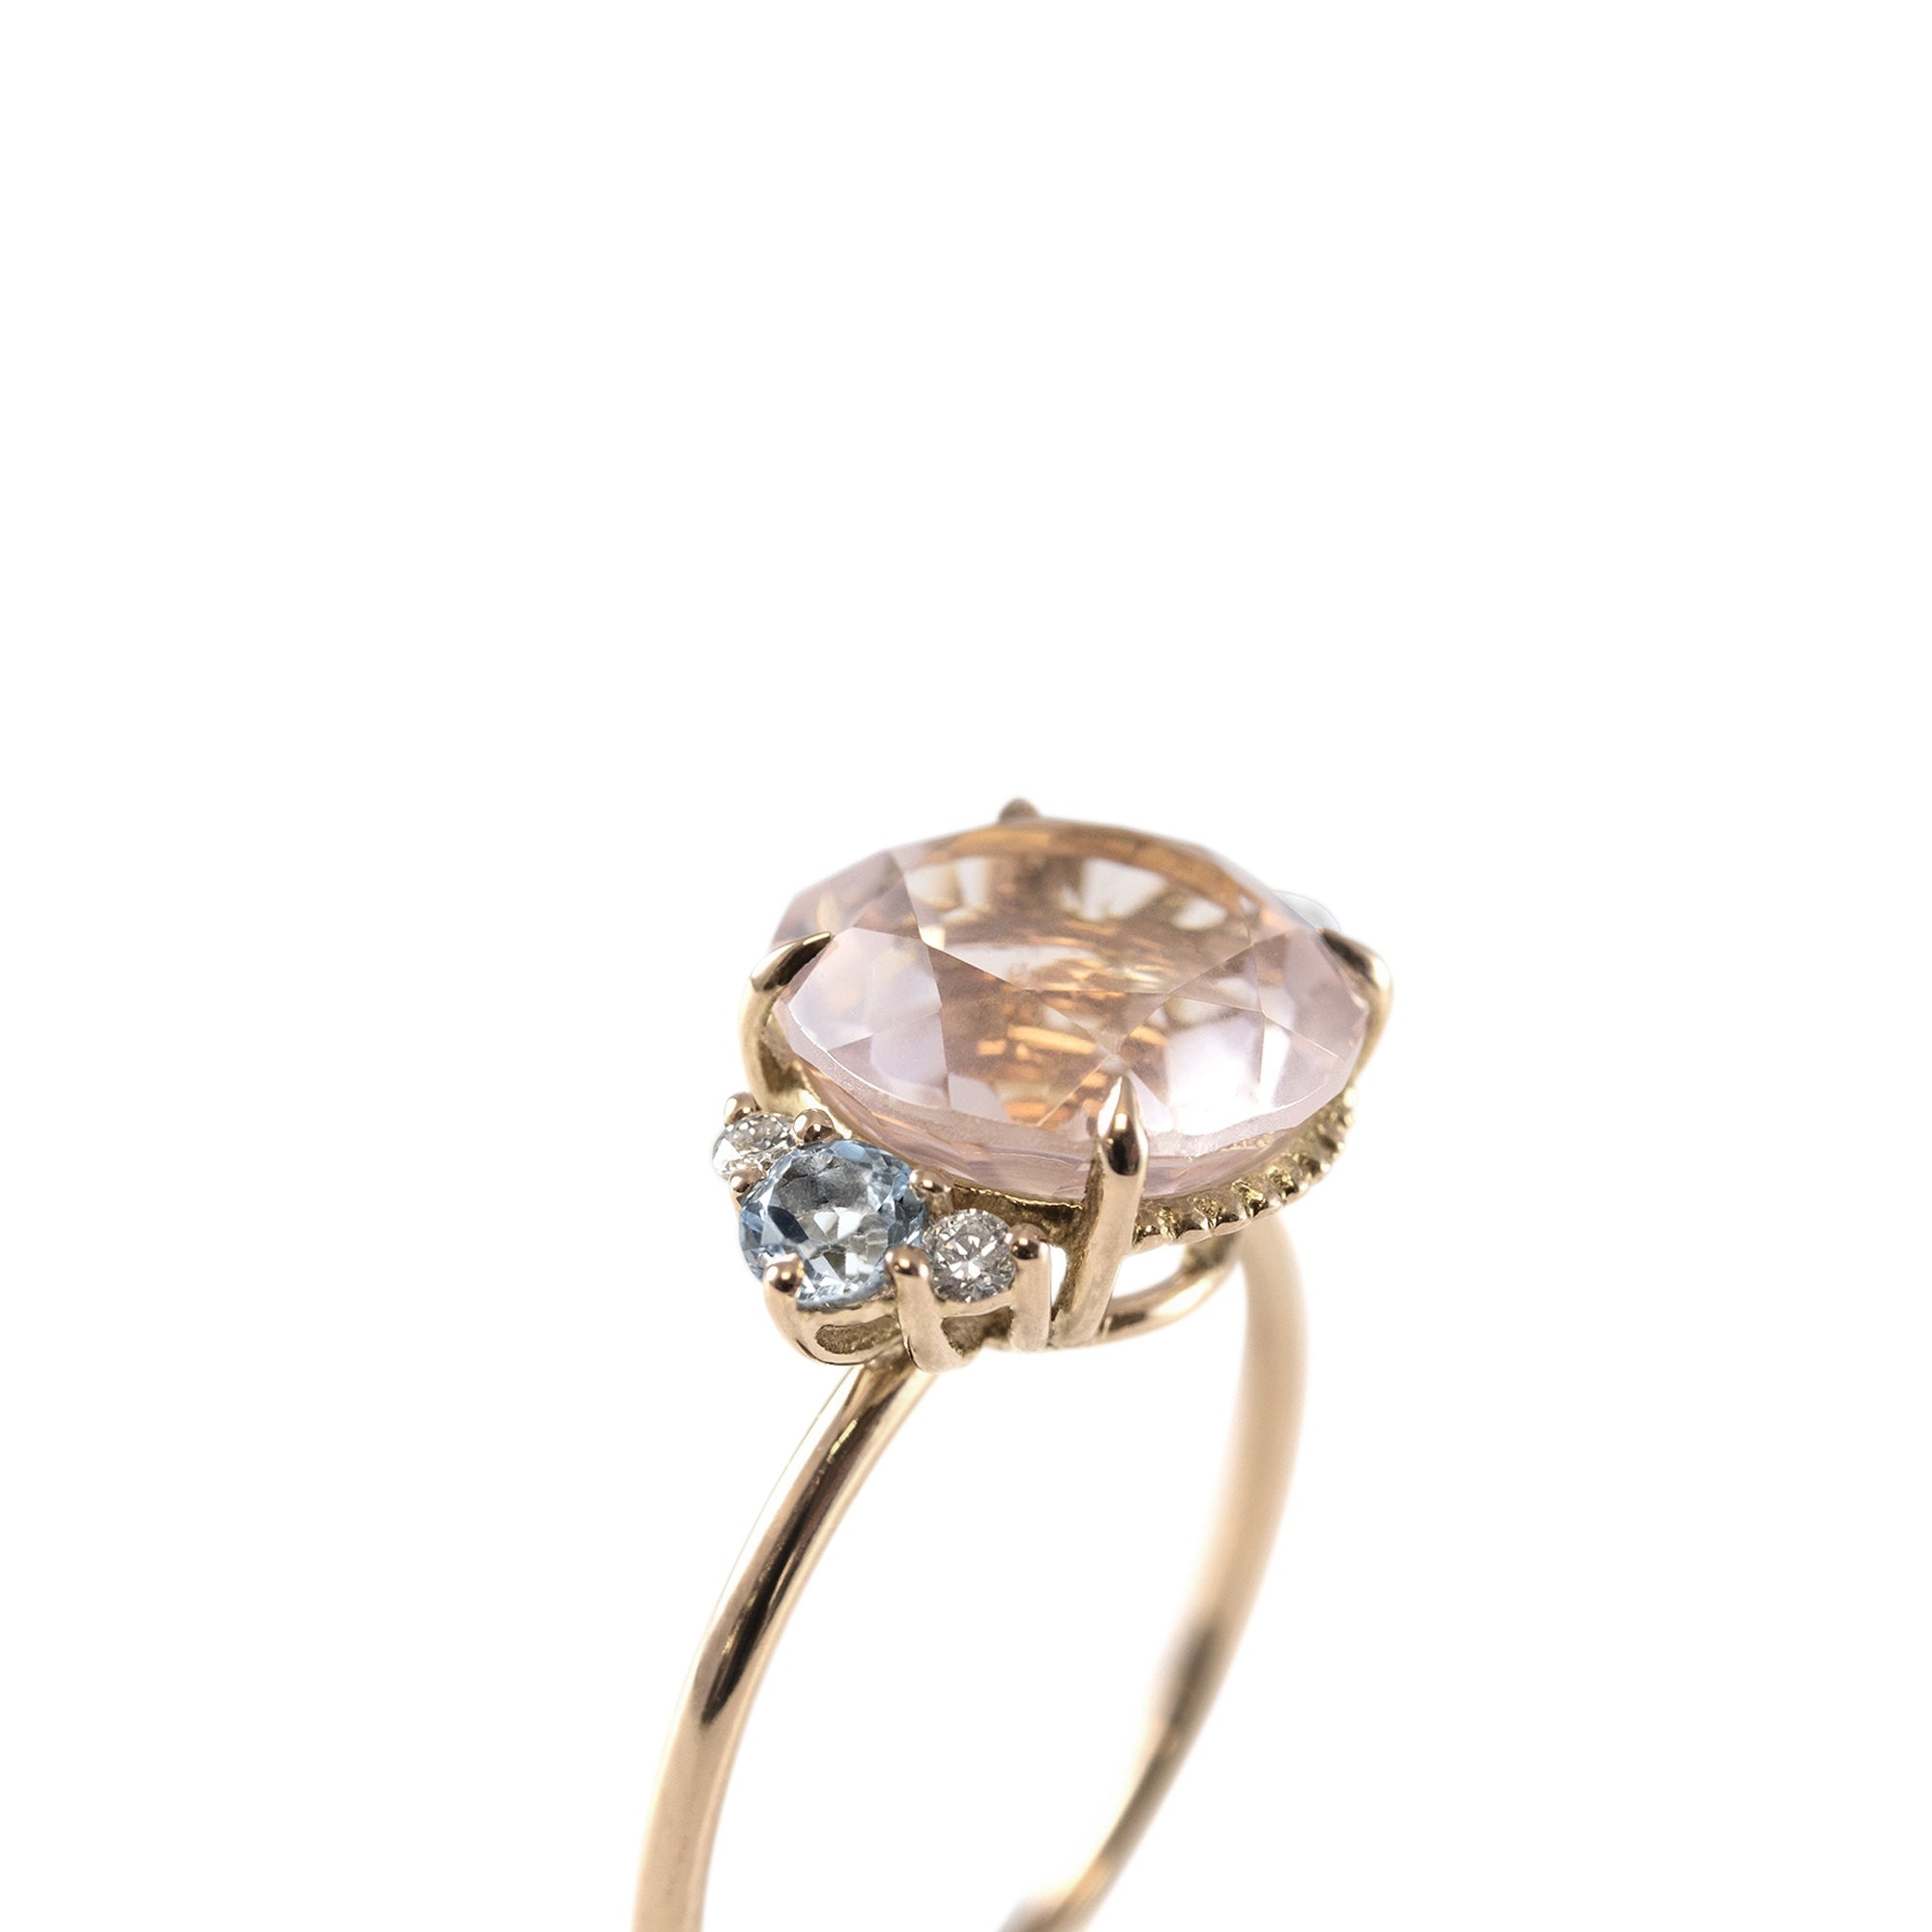 Anillo Vintage Diamantes 0.08ct oro 18kt. Piedras laterales Topacio Sky 3mm y piedra central Cuarzo rosa 10mm.